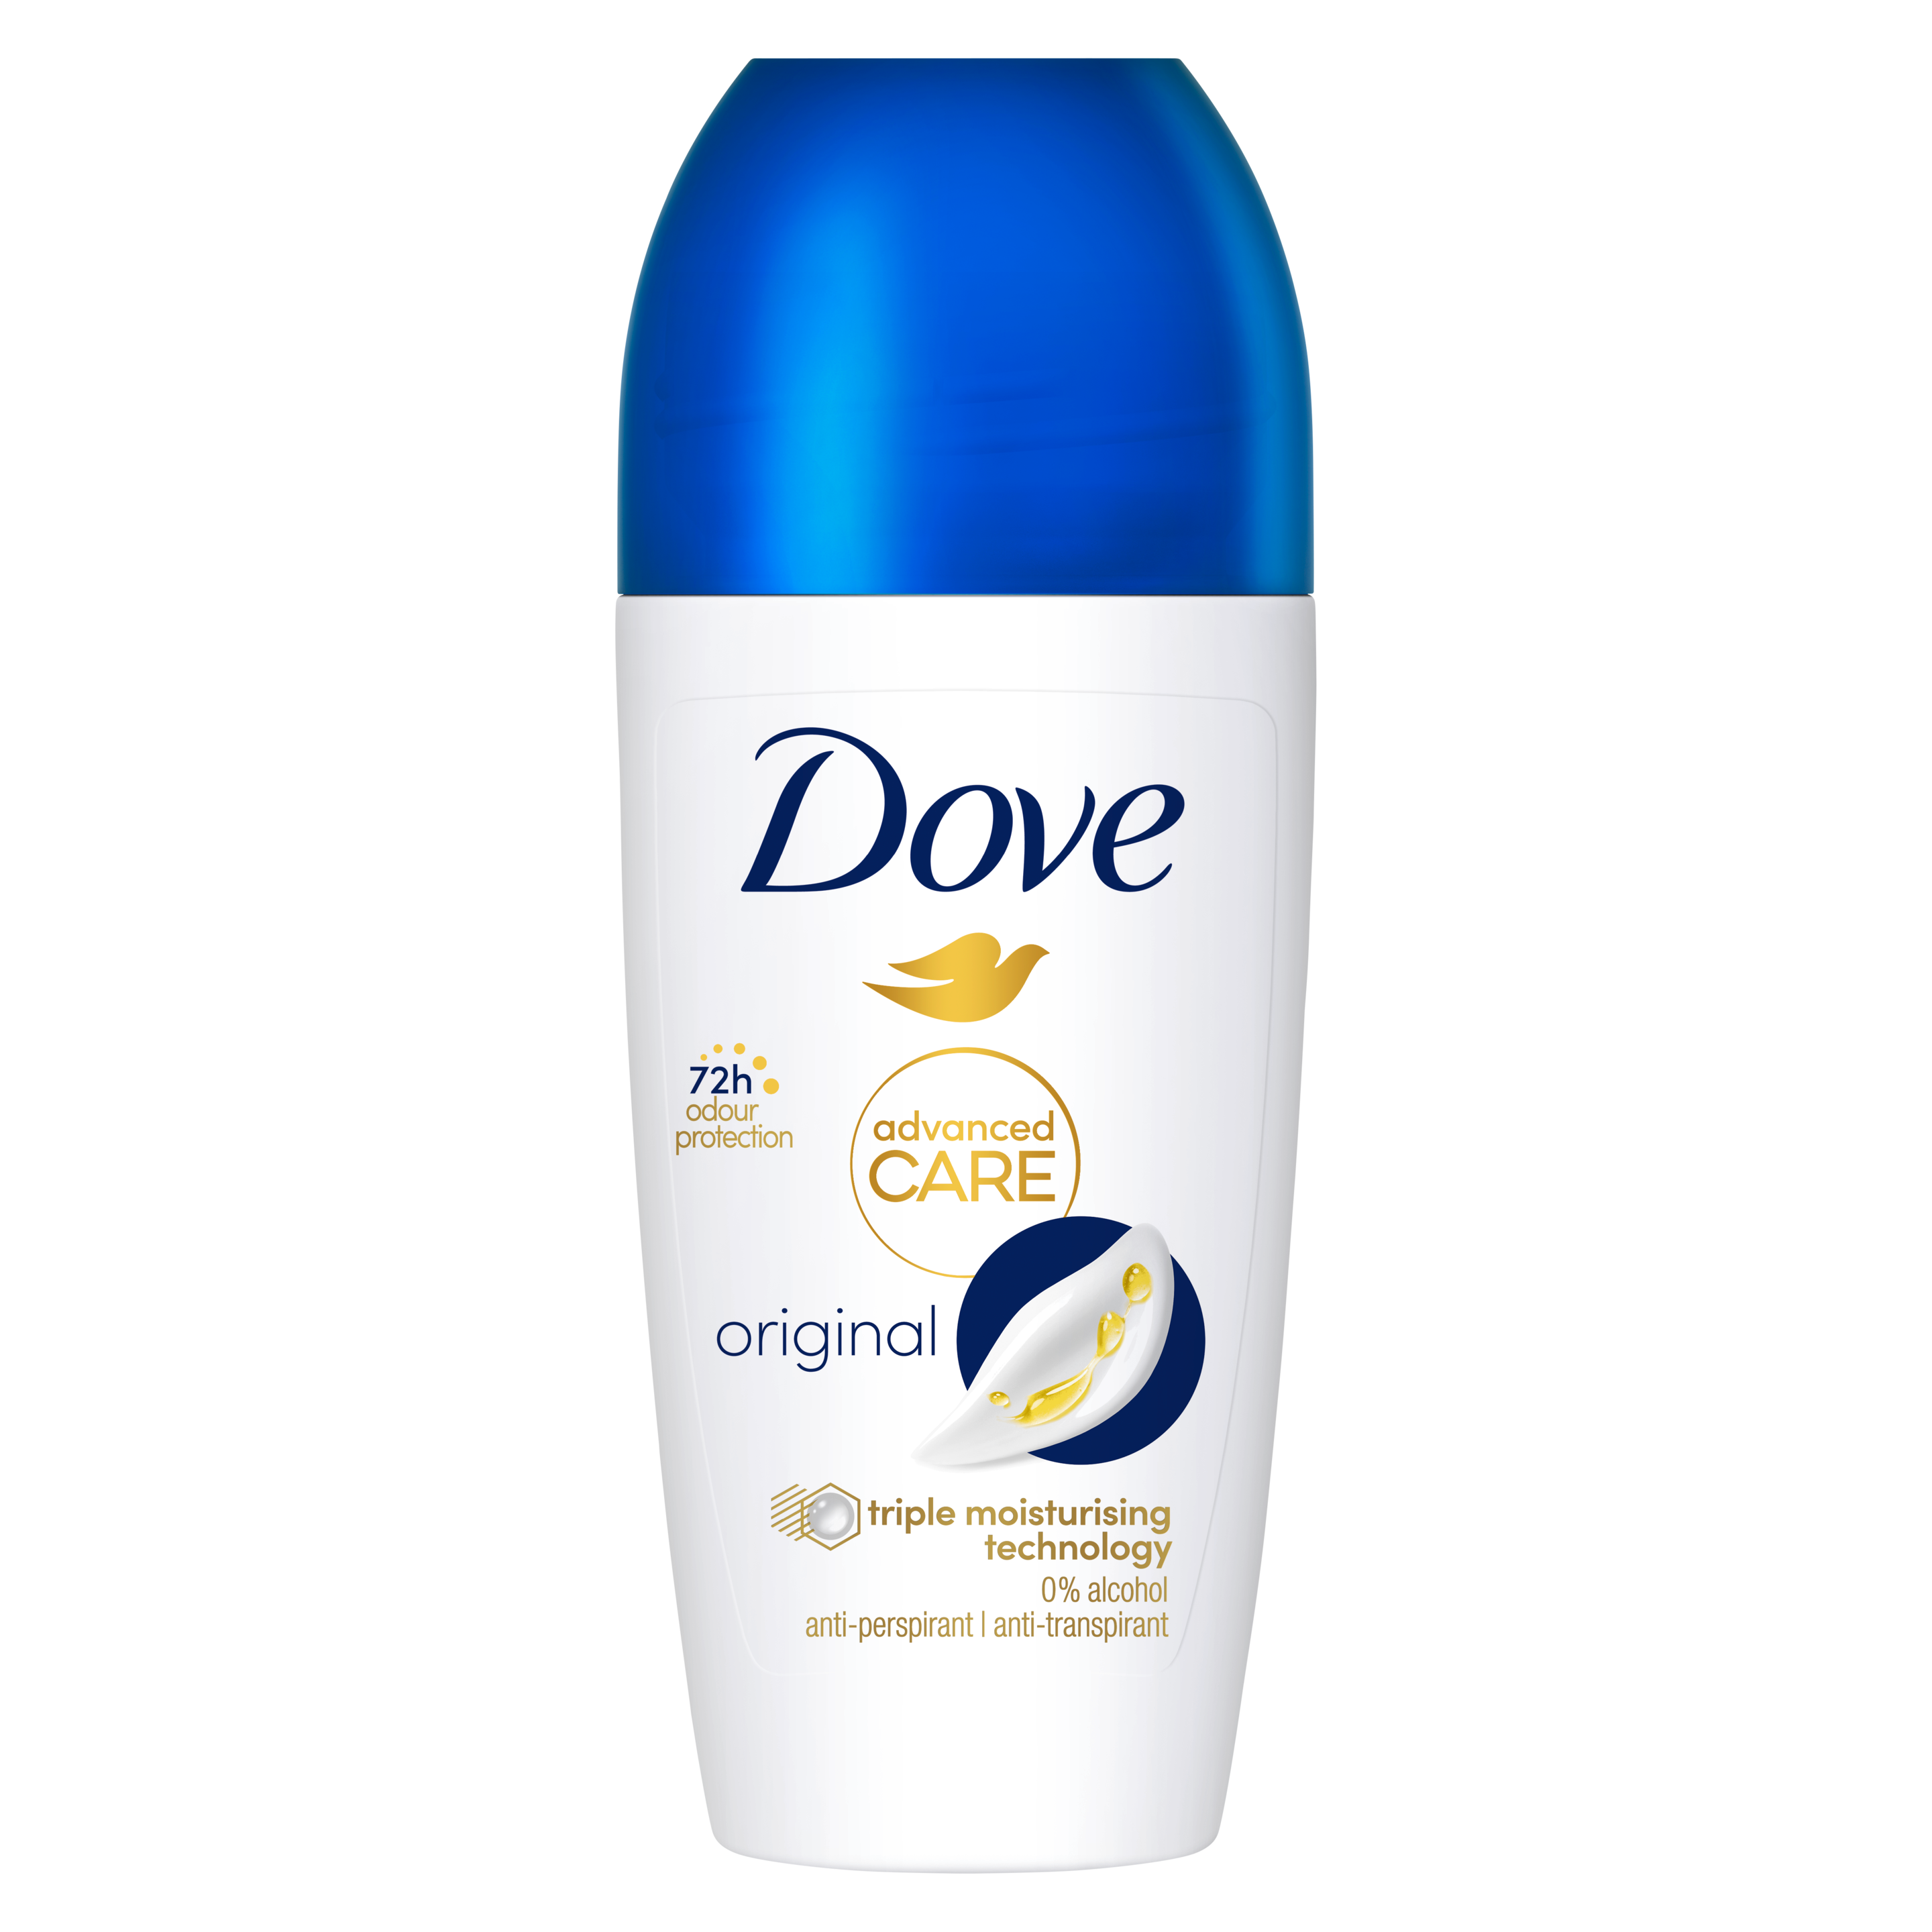 Original Roll-On Antiperspirant Deodorant – Dove